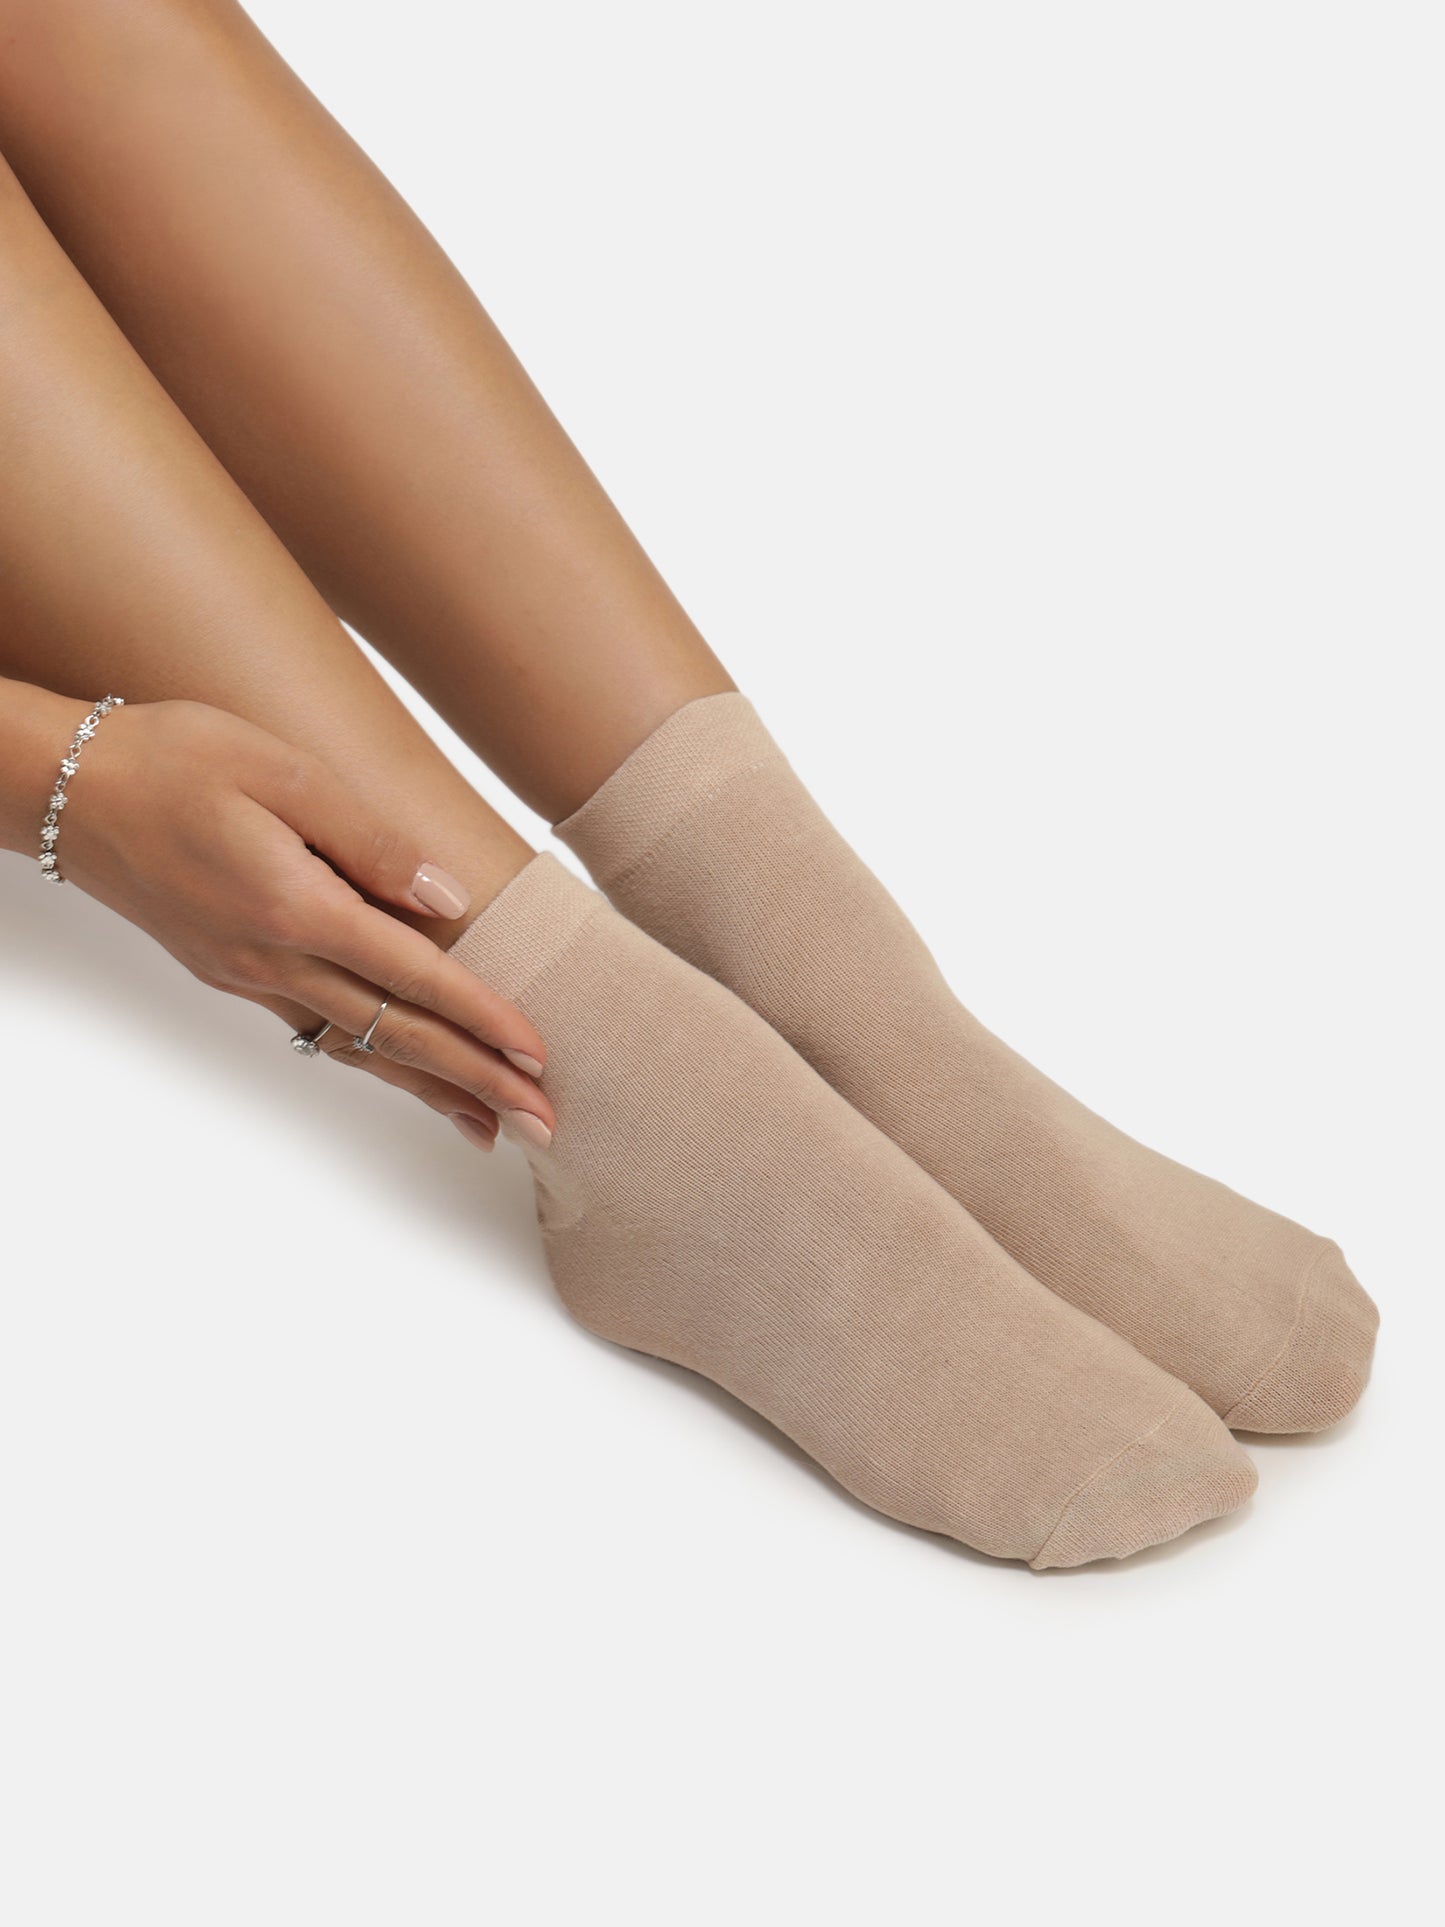 Ankle Socks - Skin